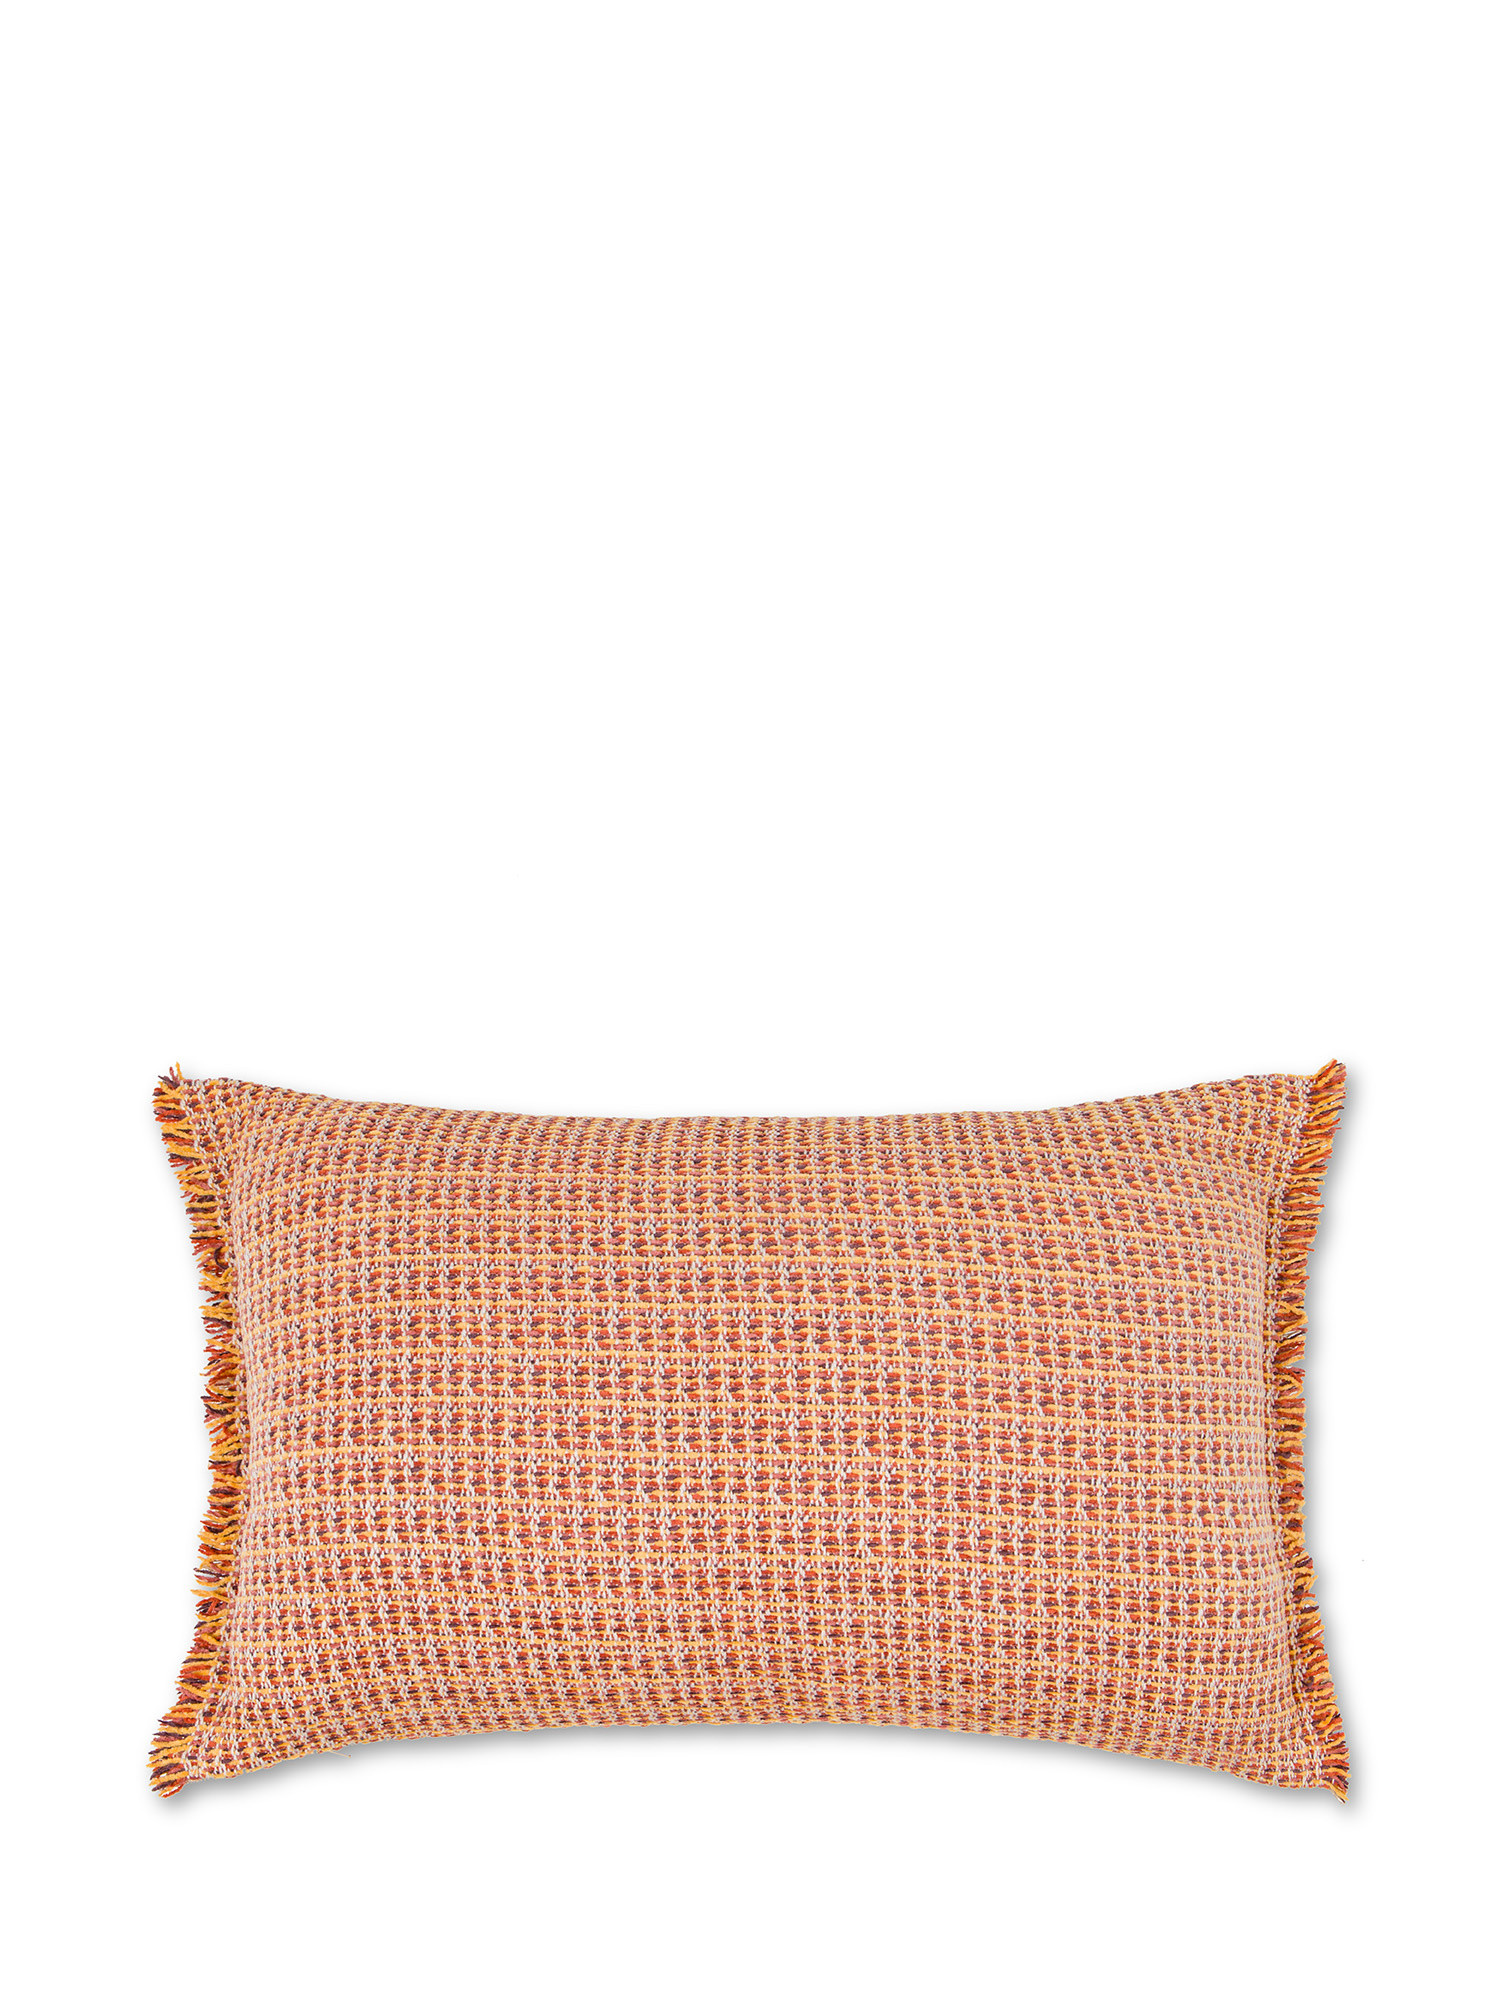 Жаккардовая вязаная подушка с бахромой 35Х55см Coincasa, орнажевый